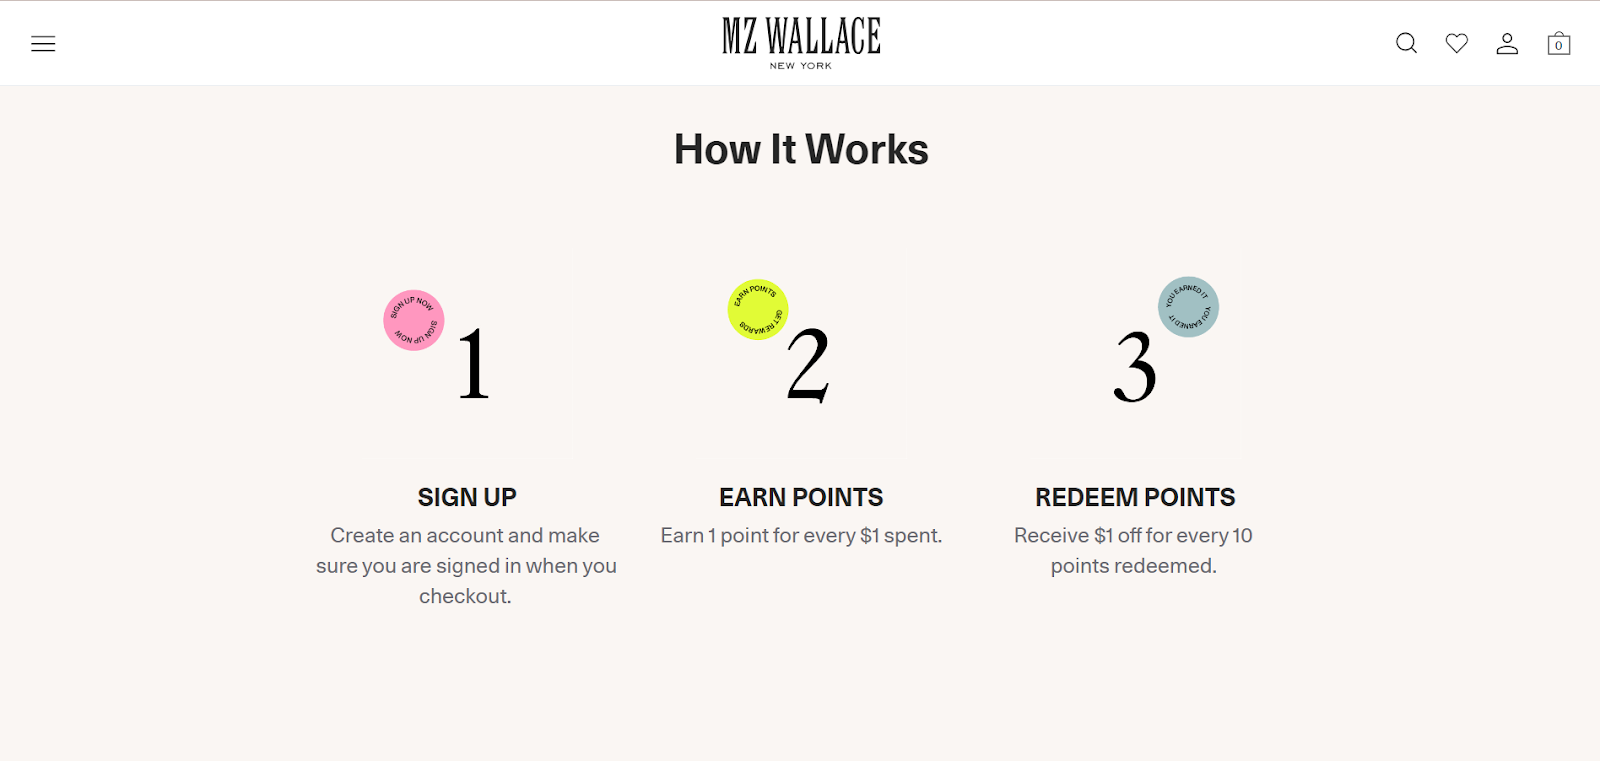 MZ wallace loyalty program - how it works